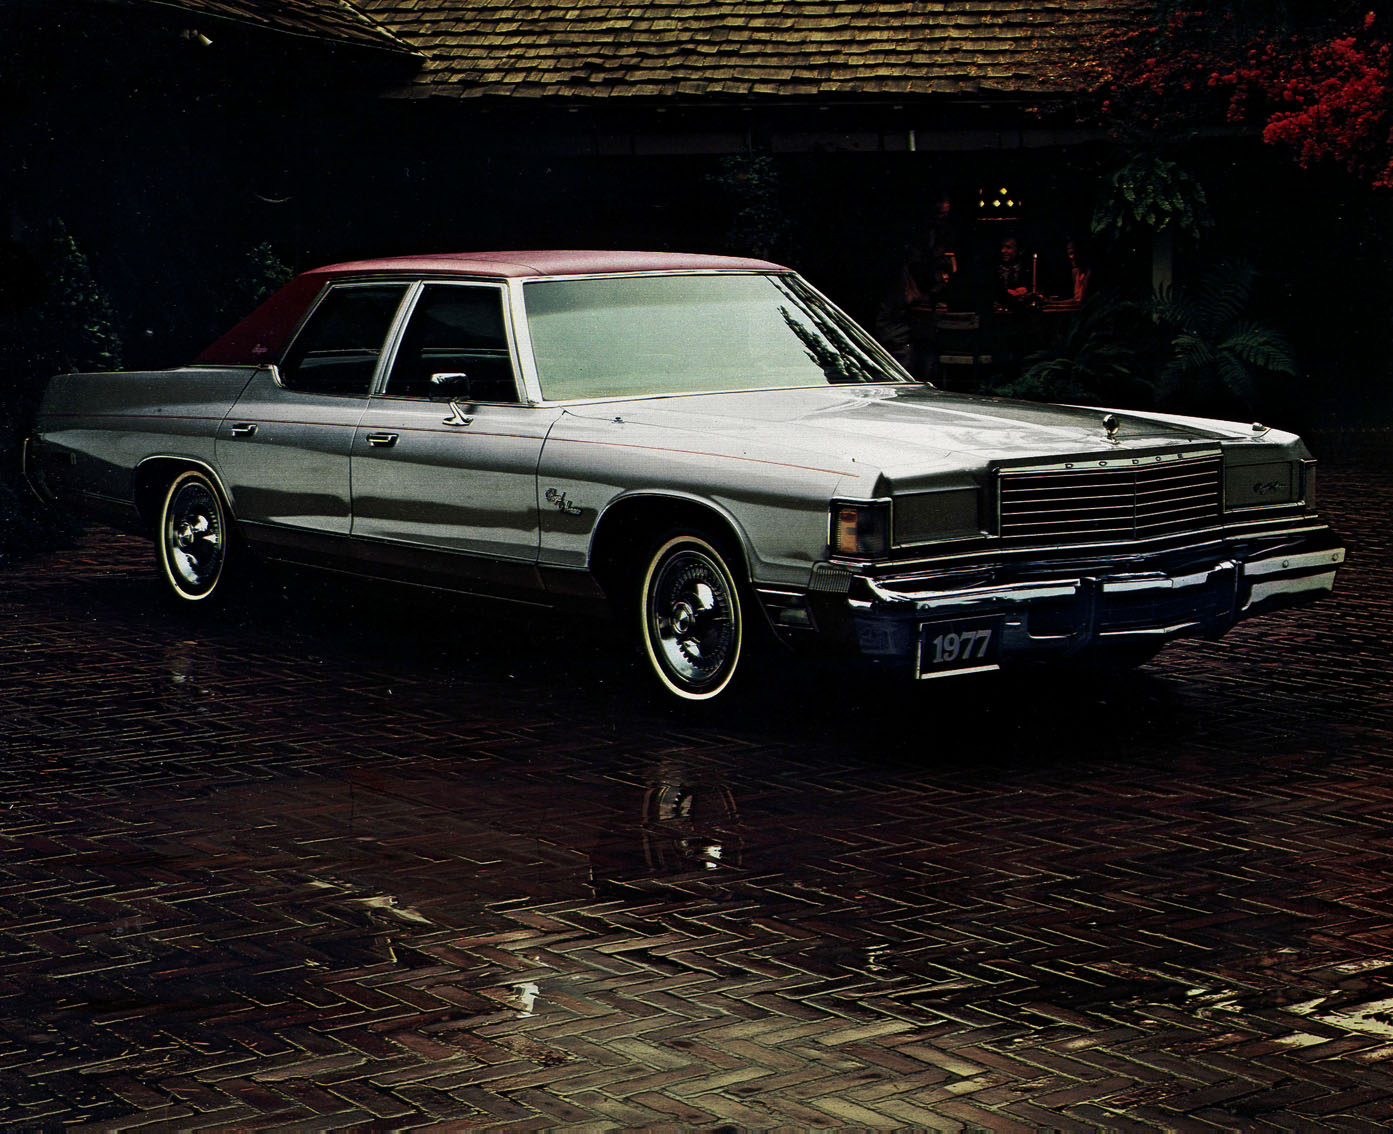 1977 Dodge Monaco-07